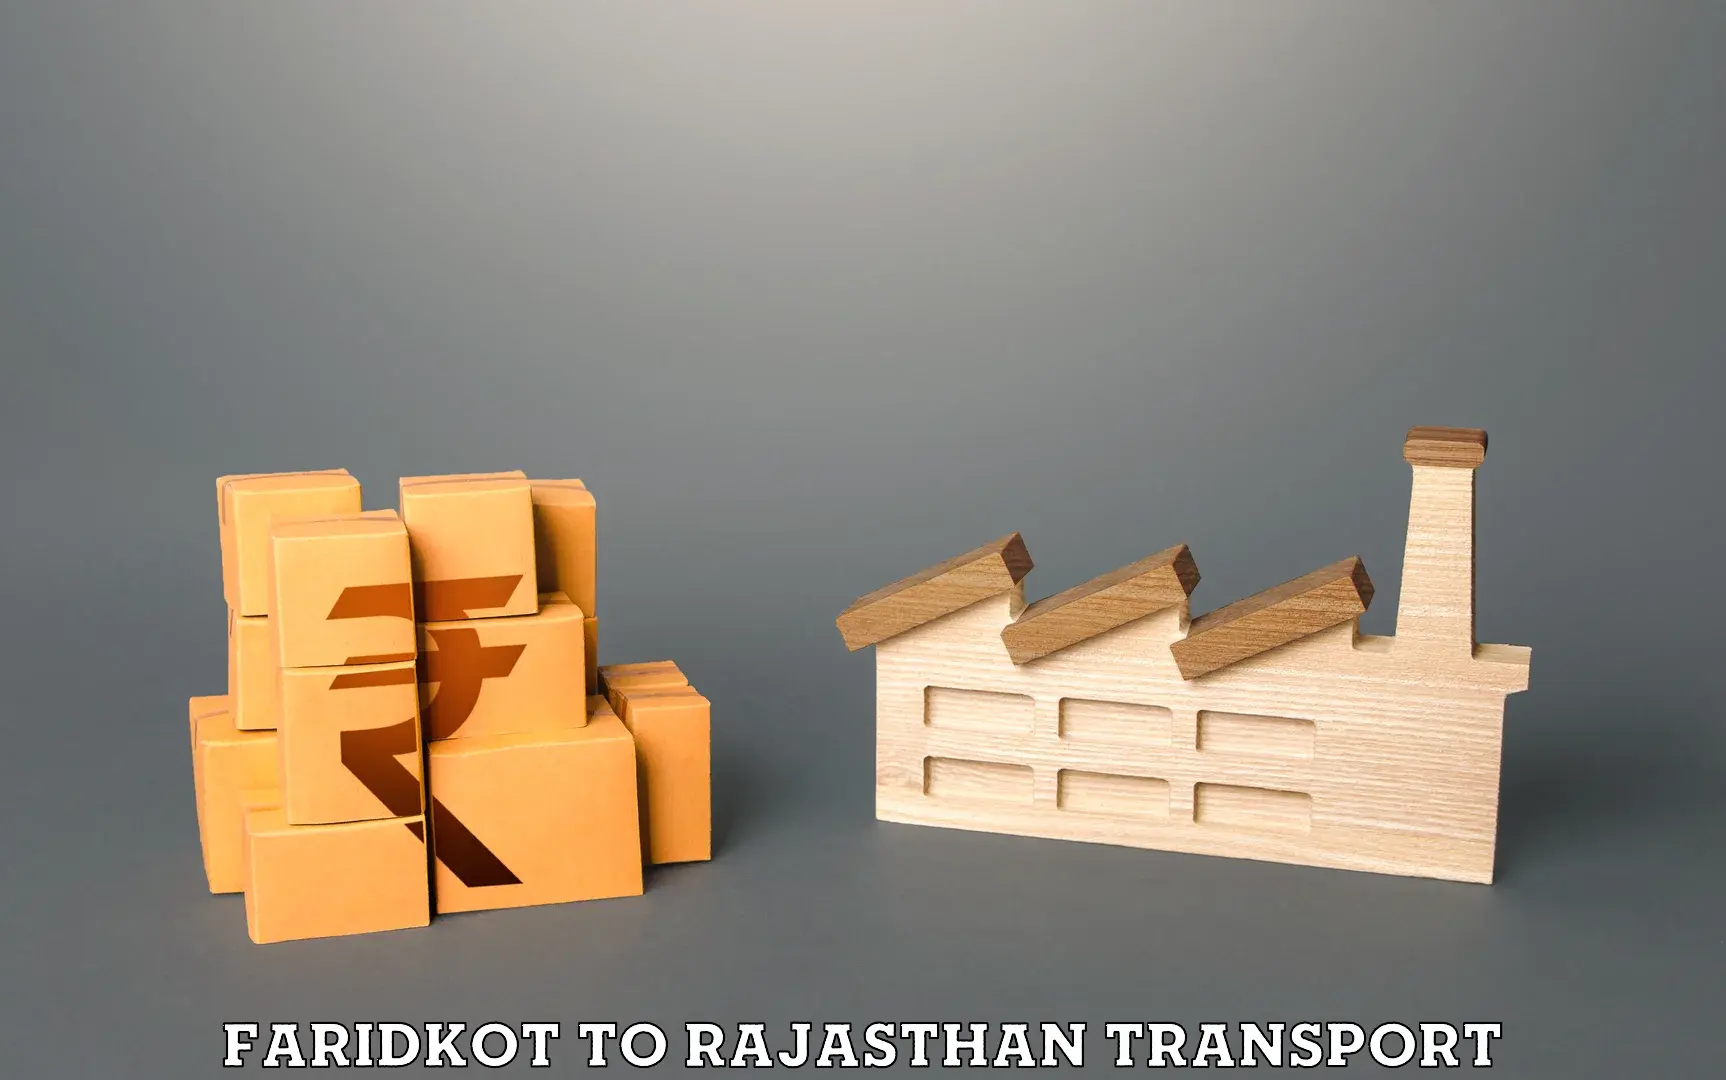 Cycle transportation service Faridkot to Rajasthan